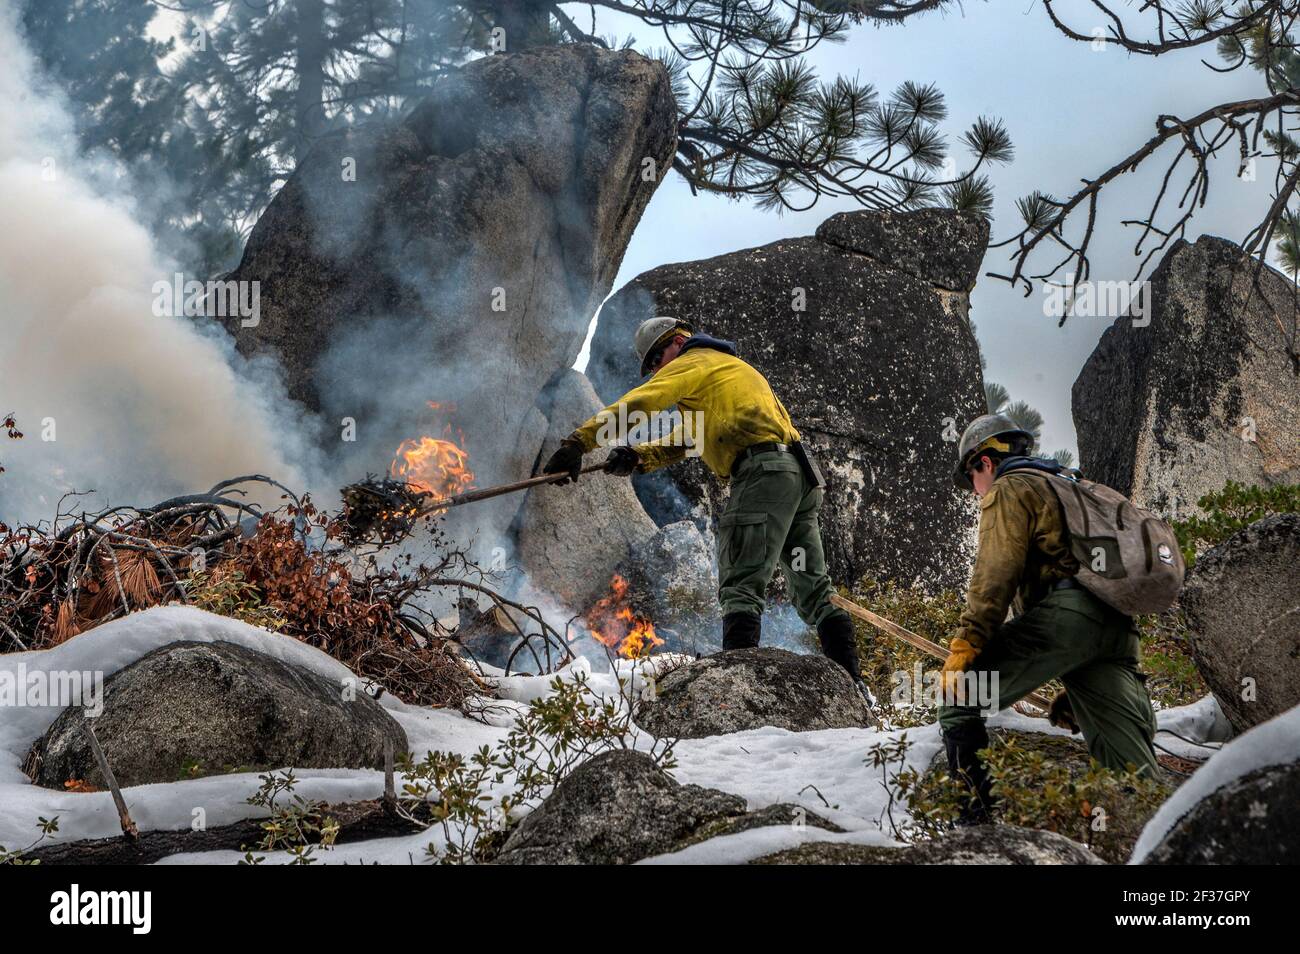 South Lake Tahoe, California, Estados Unidos. 12th de febrero de 2020. Los bomberos MIKE WICKS y MARK WAITE usan rastrillos para controlar un incendio en una quemadura prescrita en el Parque Bi-State Van Sickle en South Lake Tahoe. 'No es un asunto pequeño; estás prendiendo fuego al paisaje', dijo Anthony Scardina, subforester del Servicio Forestal de los Estados Unidos en California. "Hay riesgos y tenemos que gestionar esos riesgos y seguir los protocolos y ver si esos riesgos valen la pena". Crédito: Renee C. Byer/Sacramento Bee/ZUMA Wire/Alamy Live News Foto de stock